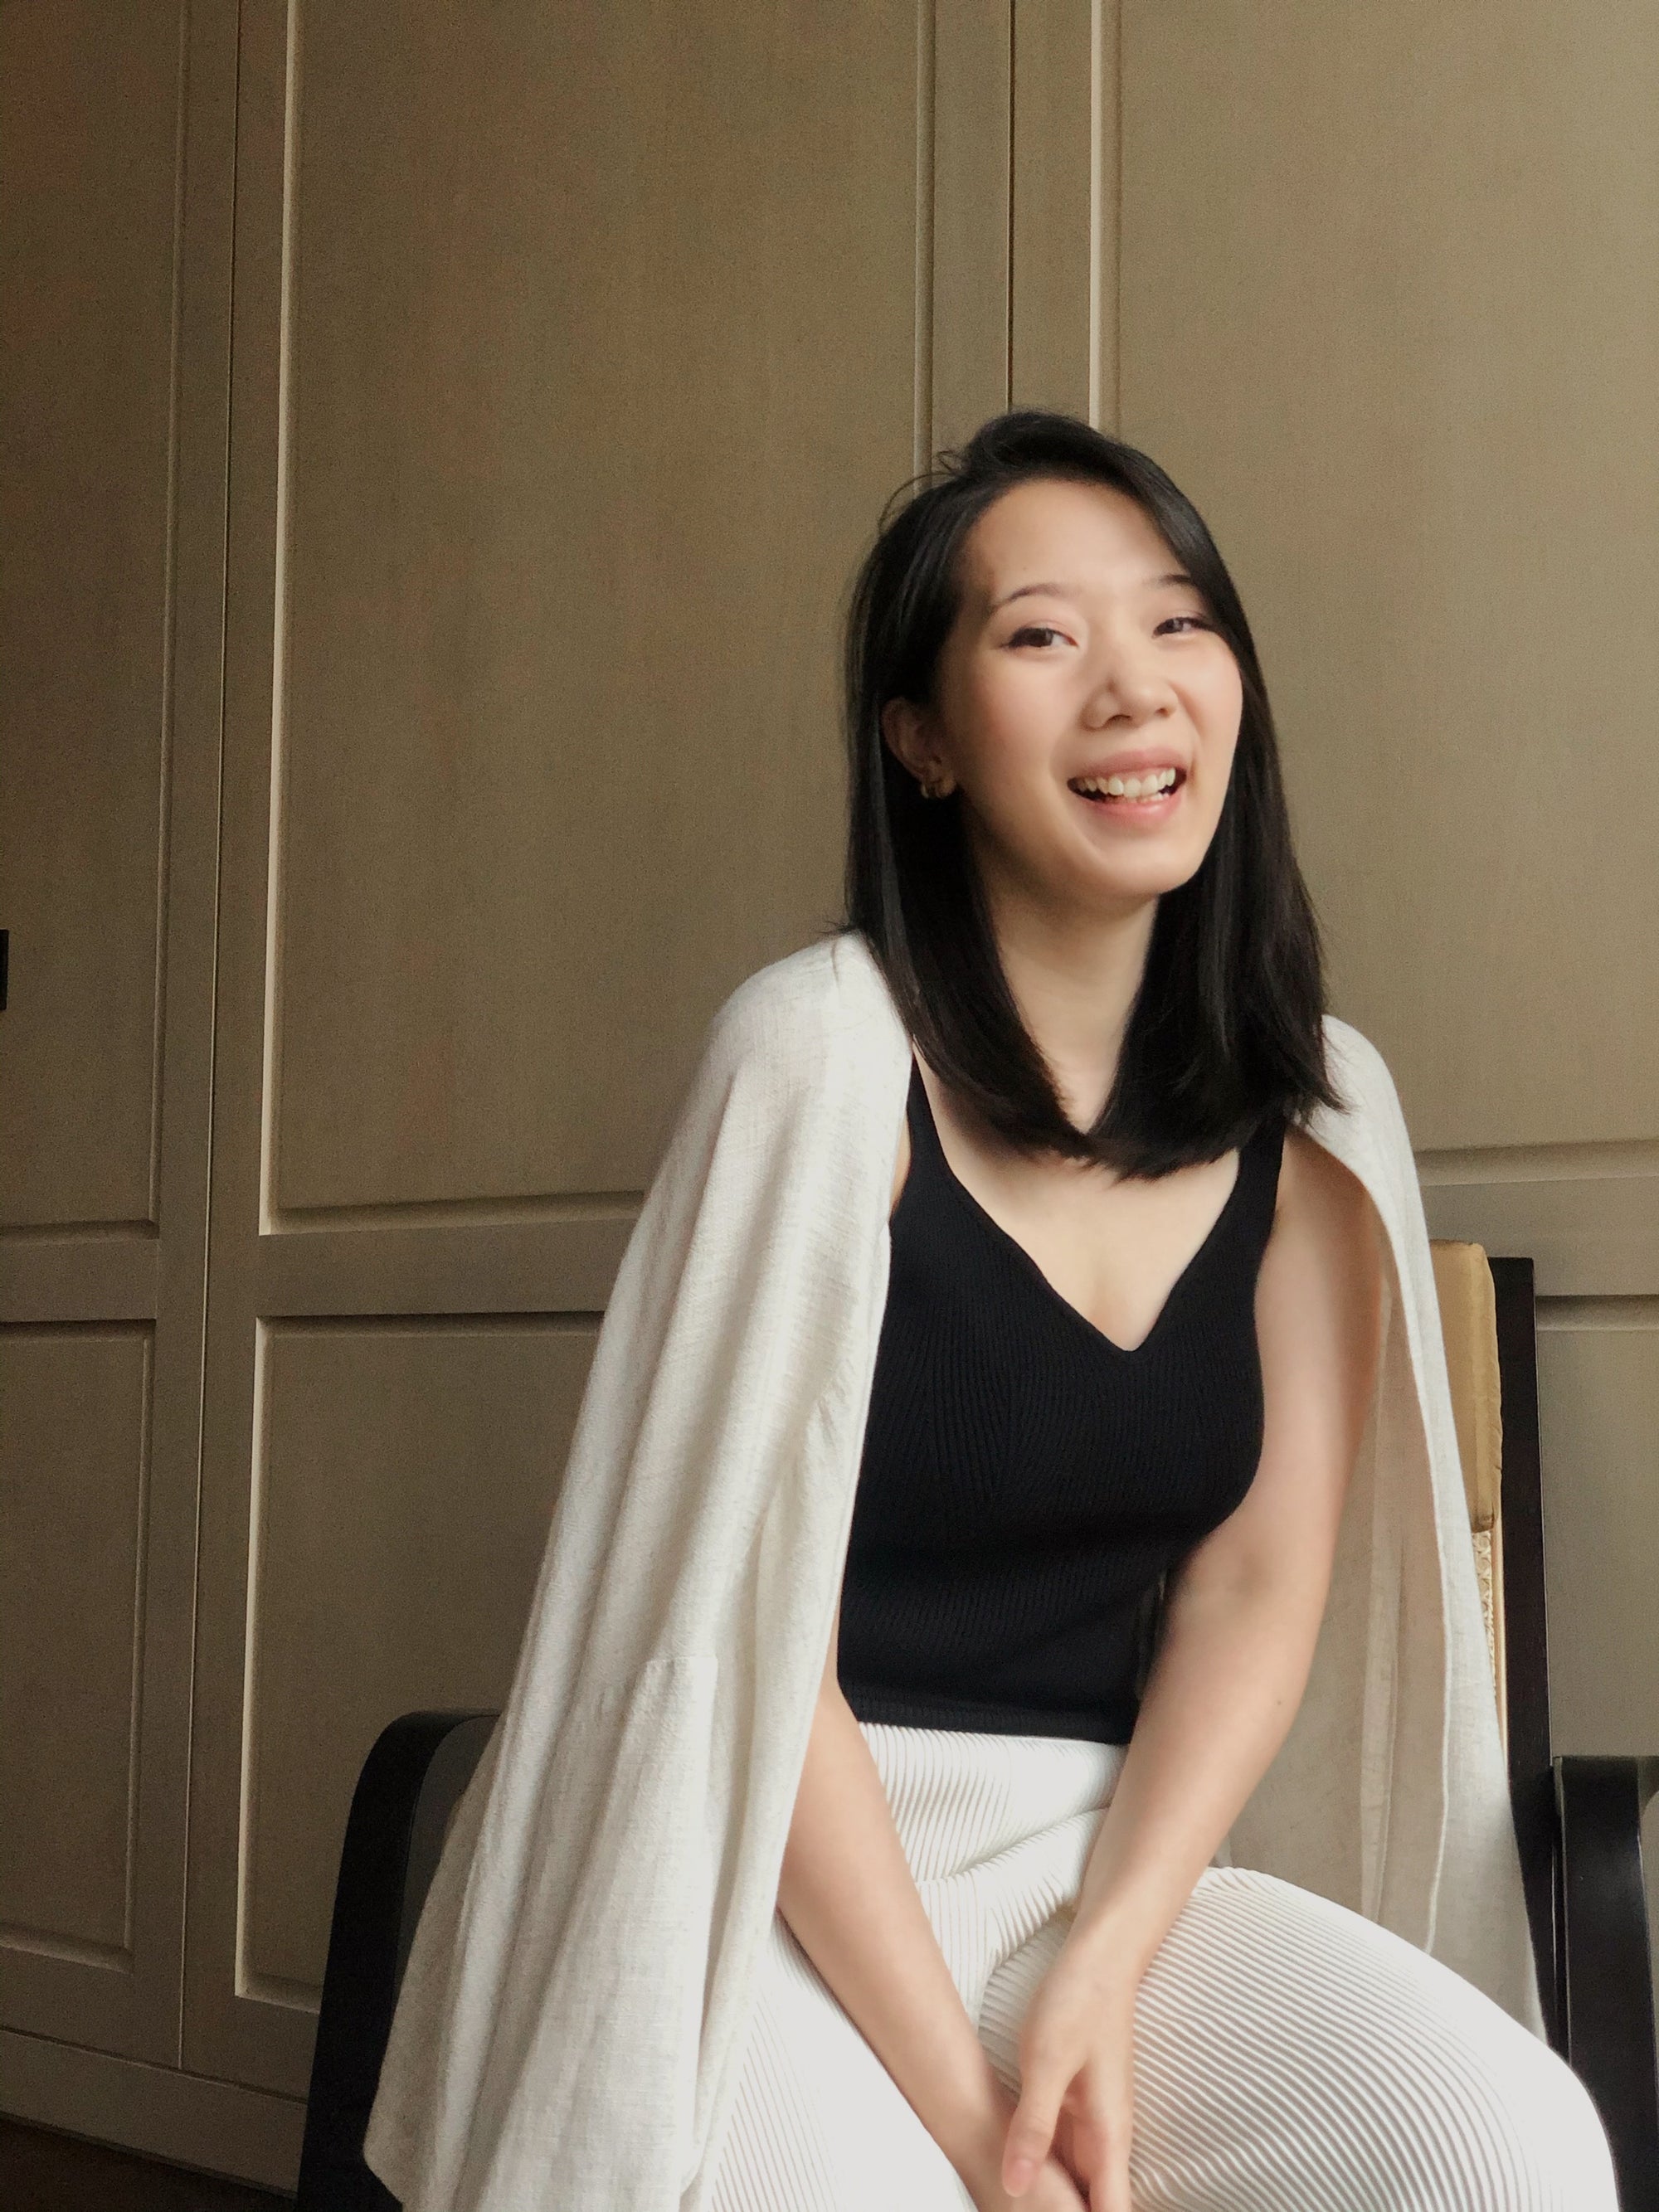 Women of Pearls: Rosann Ling, Branding Strategist